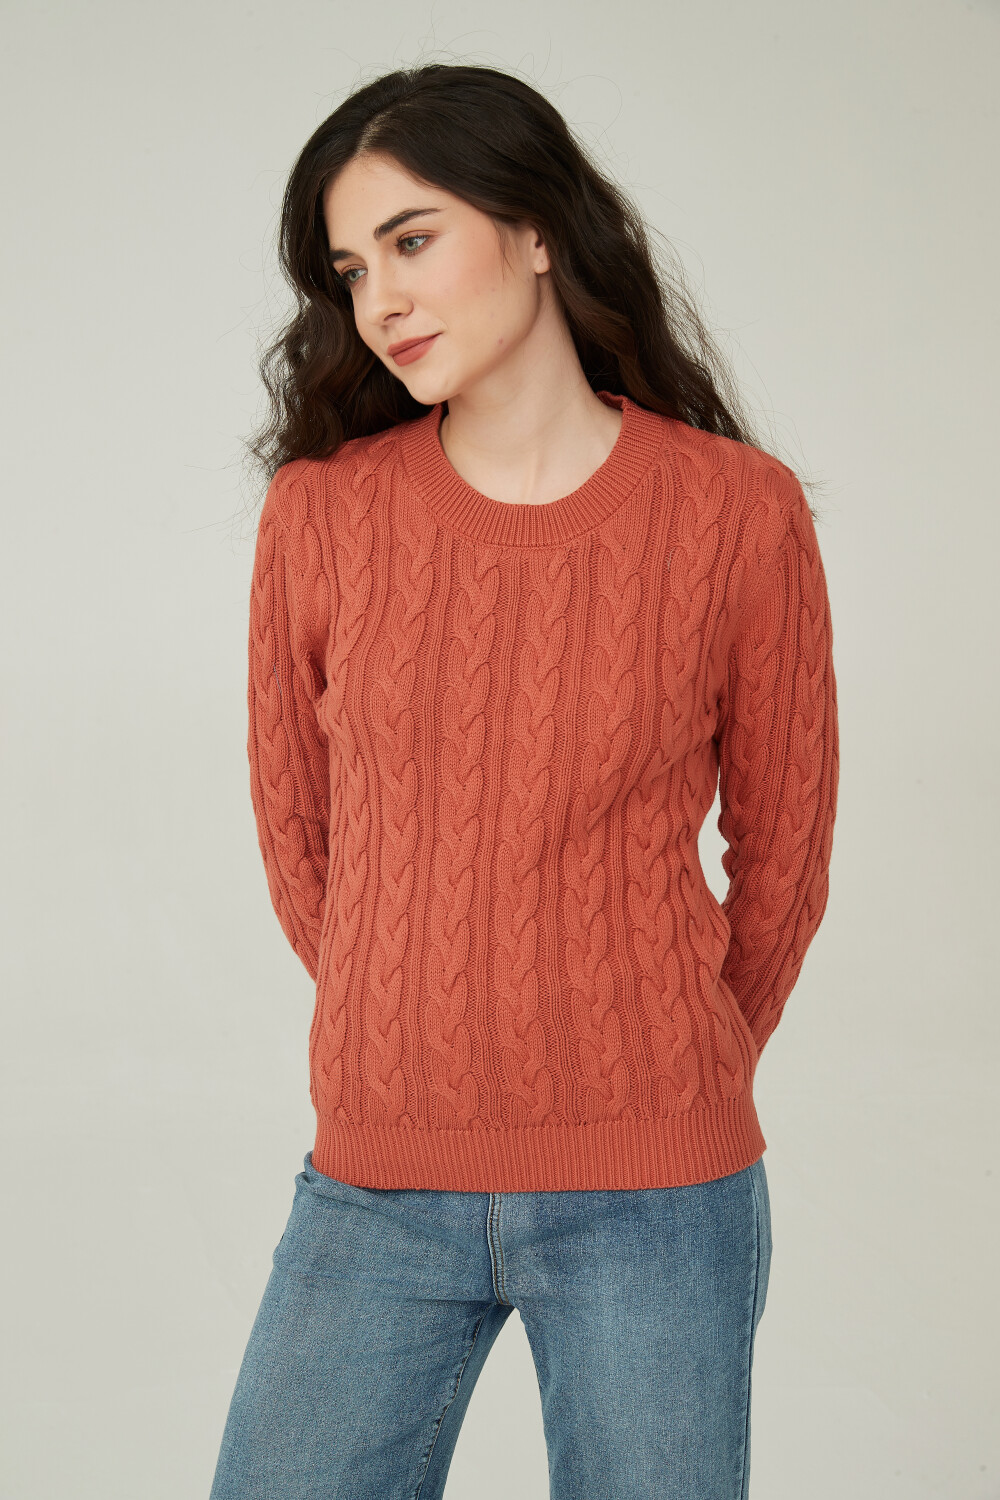 Sweater Teogonorio Cobre